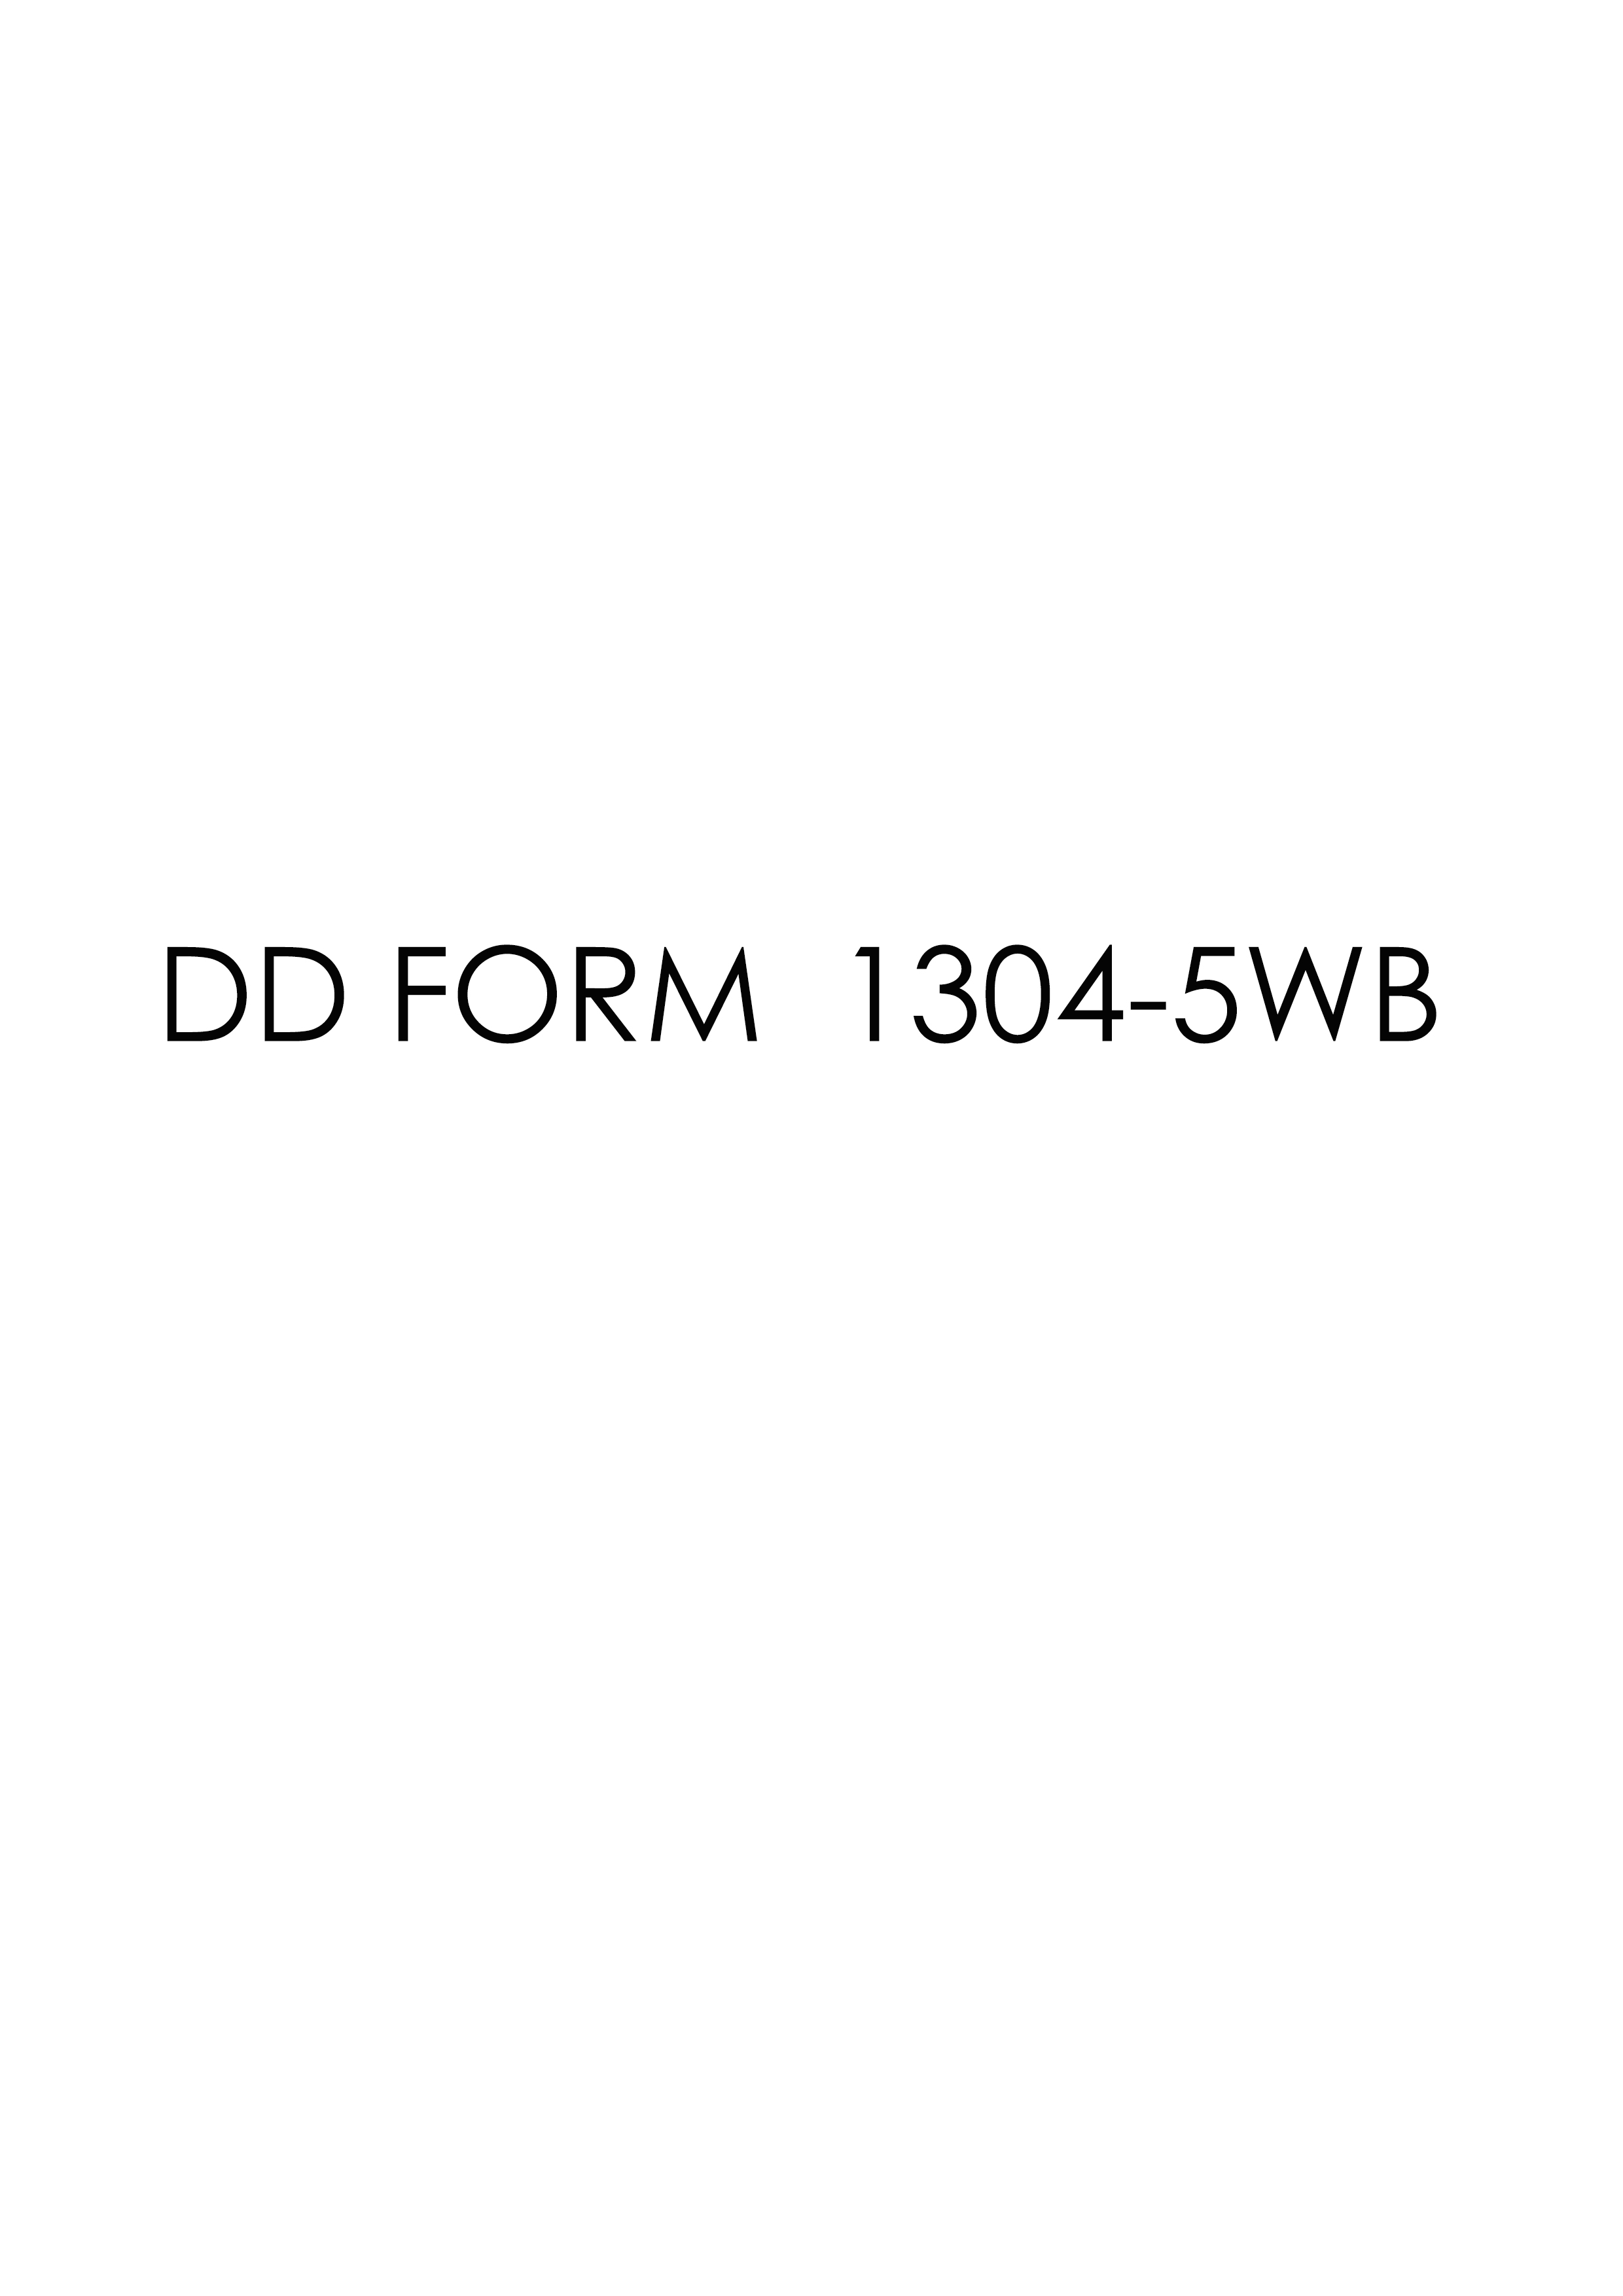 Download dd Form 1304-5WB